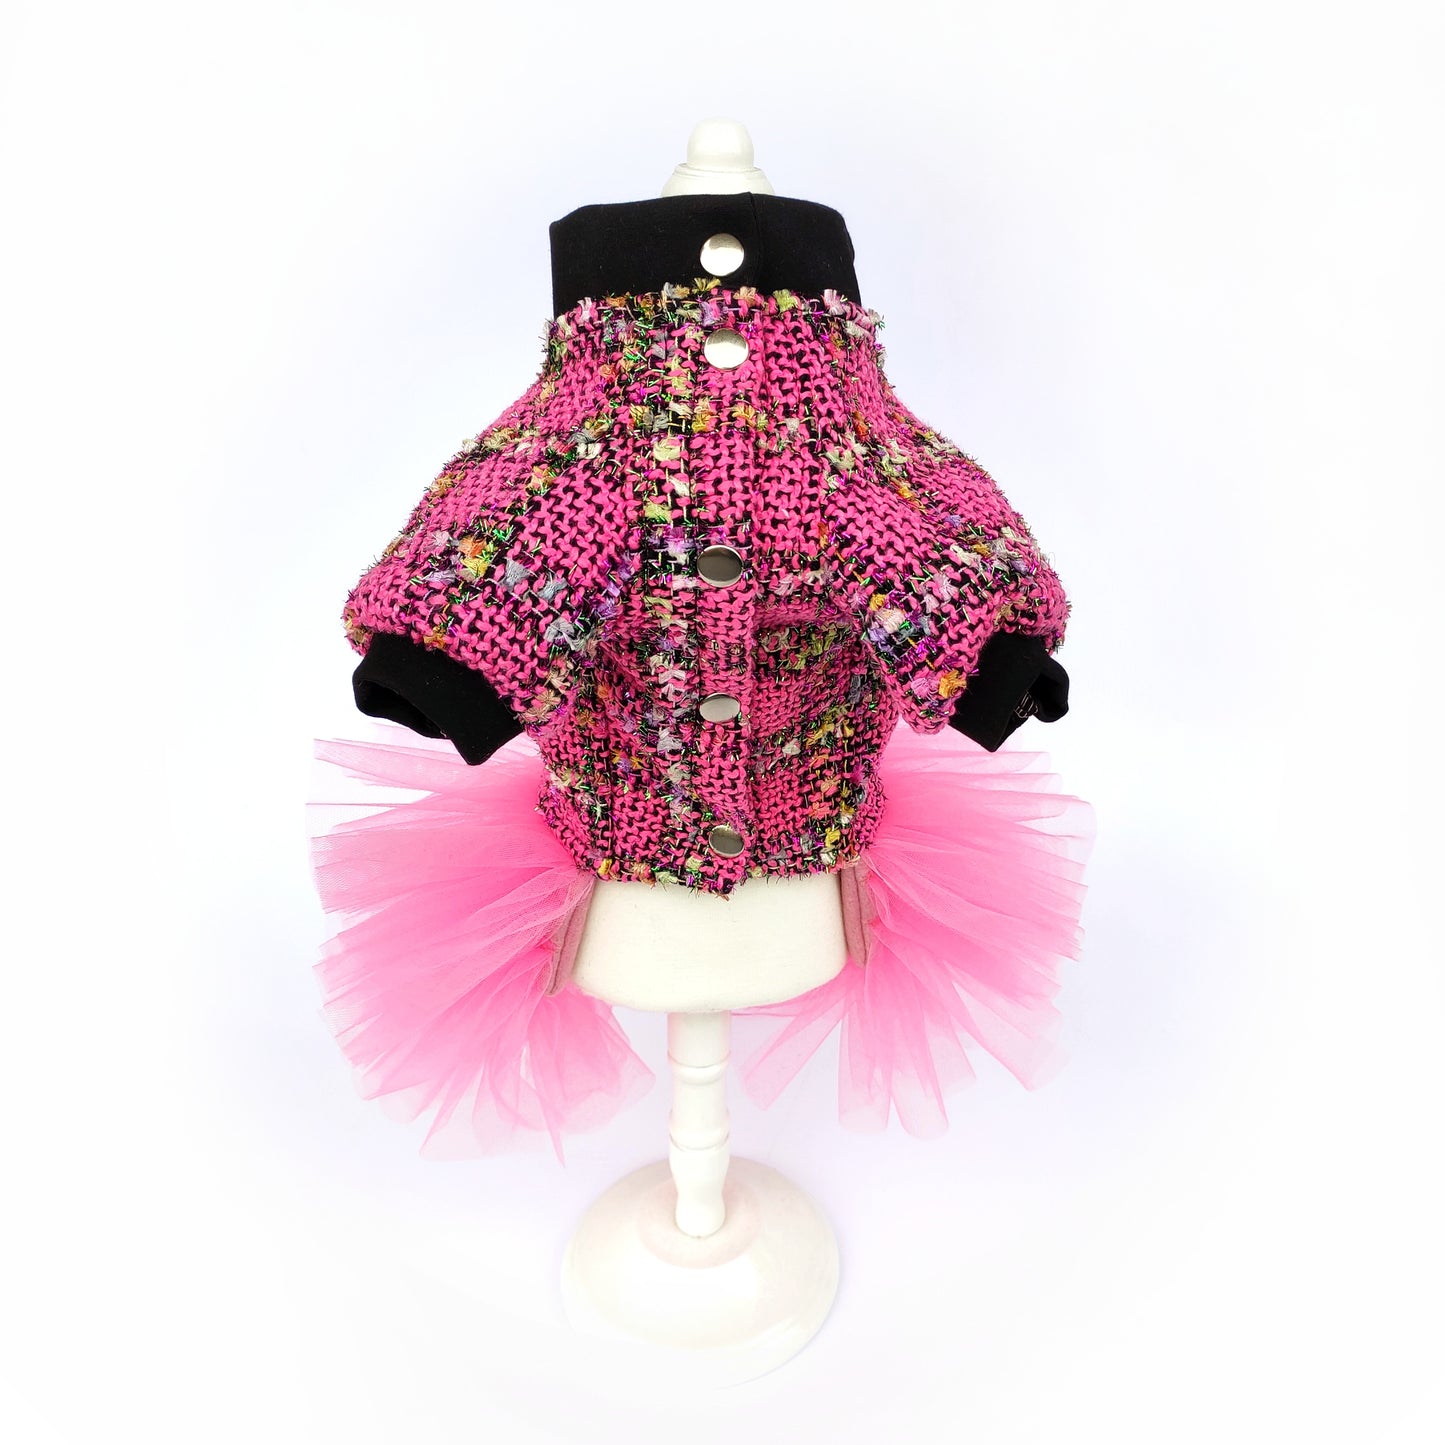 Stylish pink tweed dog dress with tutu skirt